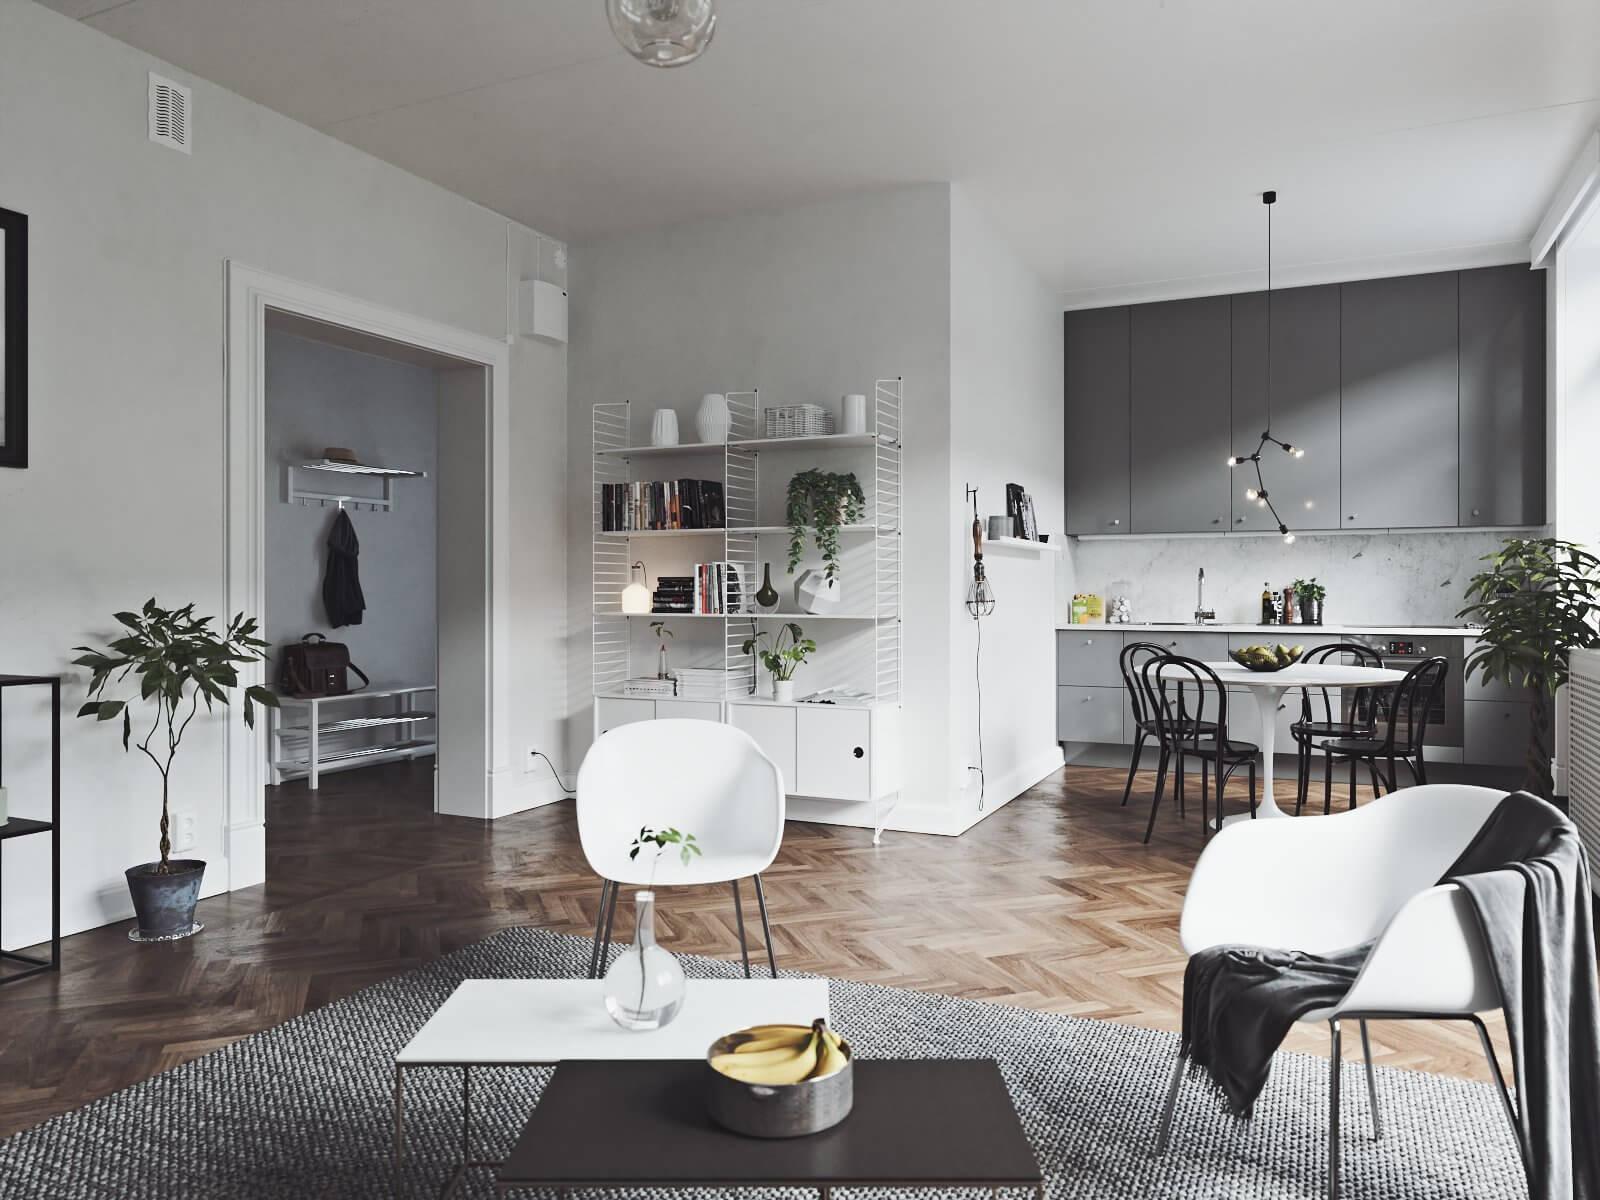 Eine moderne Wohn- und Küchenkombination - skandinavischer Stil